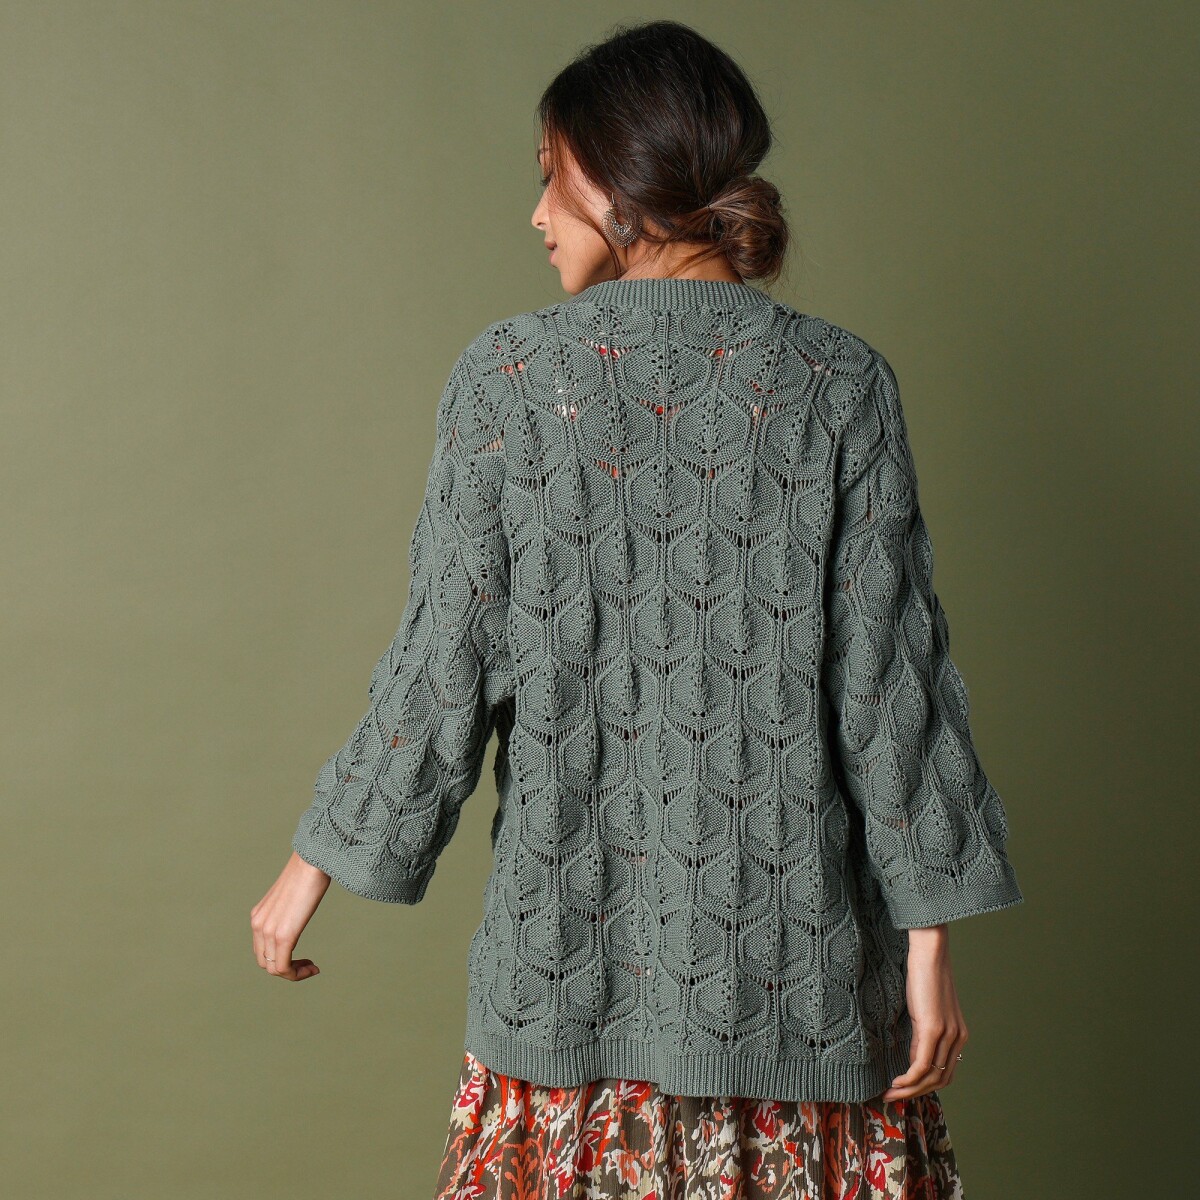 Kimono sveter, ažúrový vzor